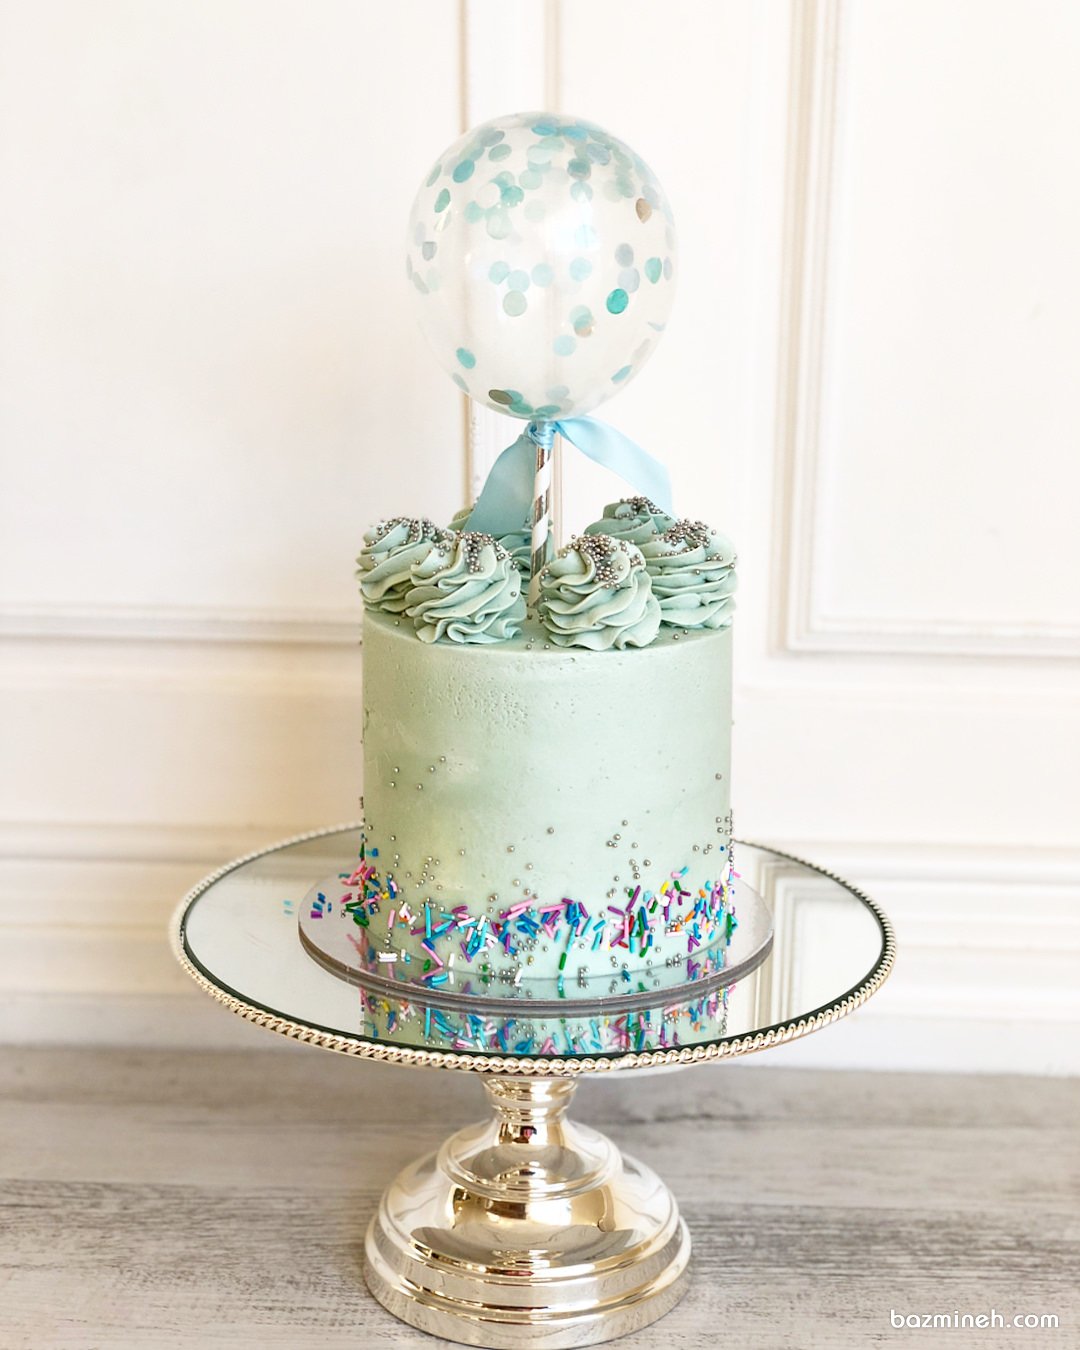 مینی کیک فانتزی جشن تولد پسرونه یا جشن بیبی شاور با تم آبی نقره ای